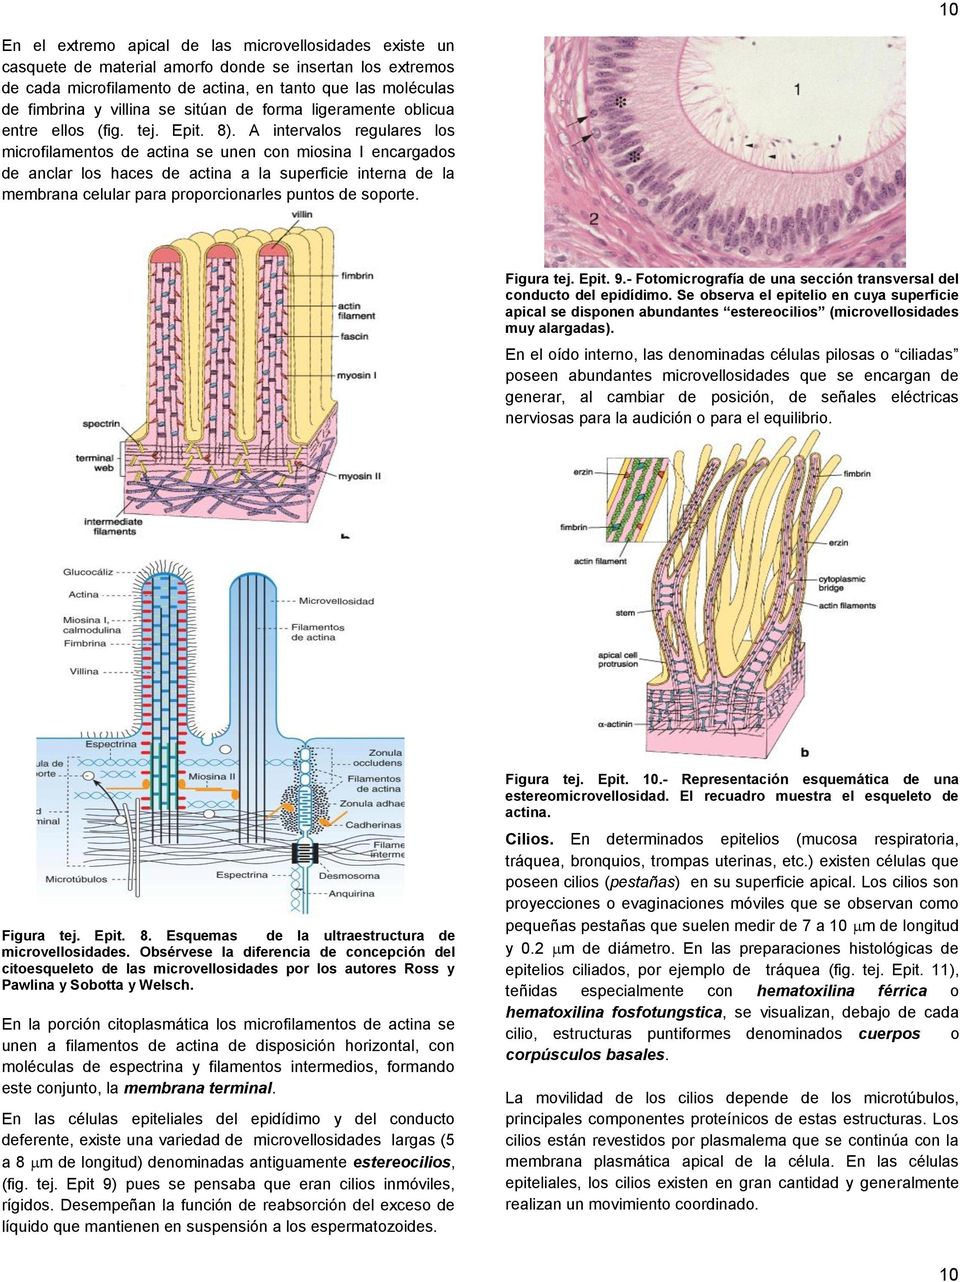 A intervalos regulares los microfilamentos de actina se unen con miosina I encargados de anclar los haces de actina a la superficie interna de la membrana celular para proporcionarles puntos de